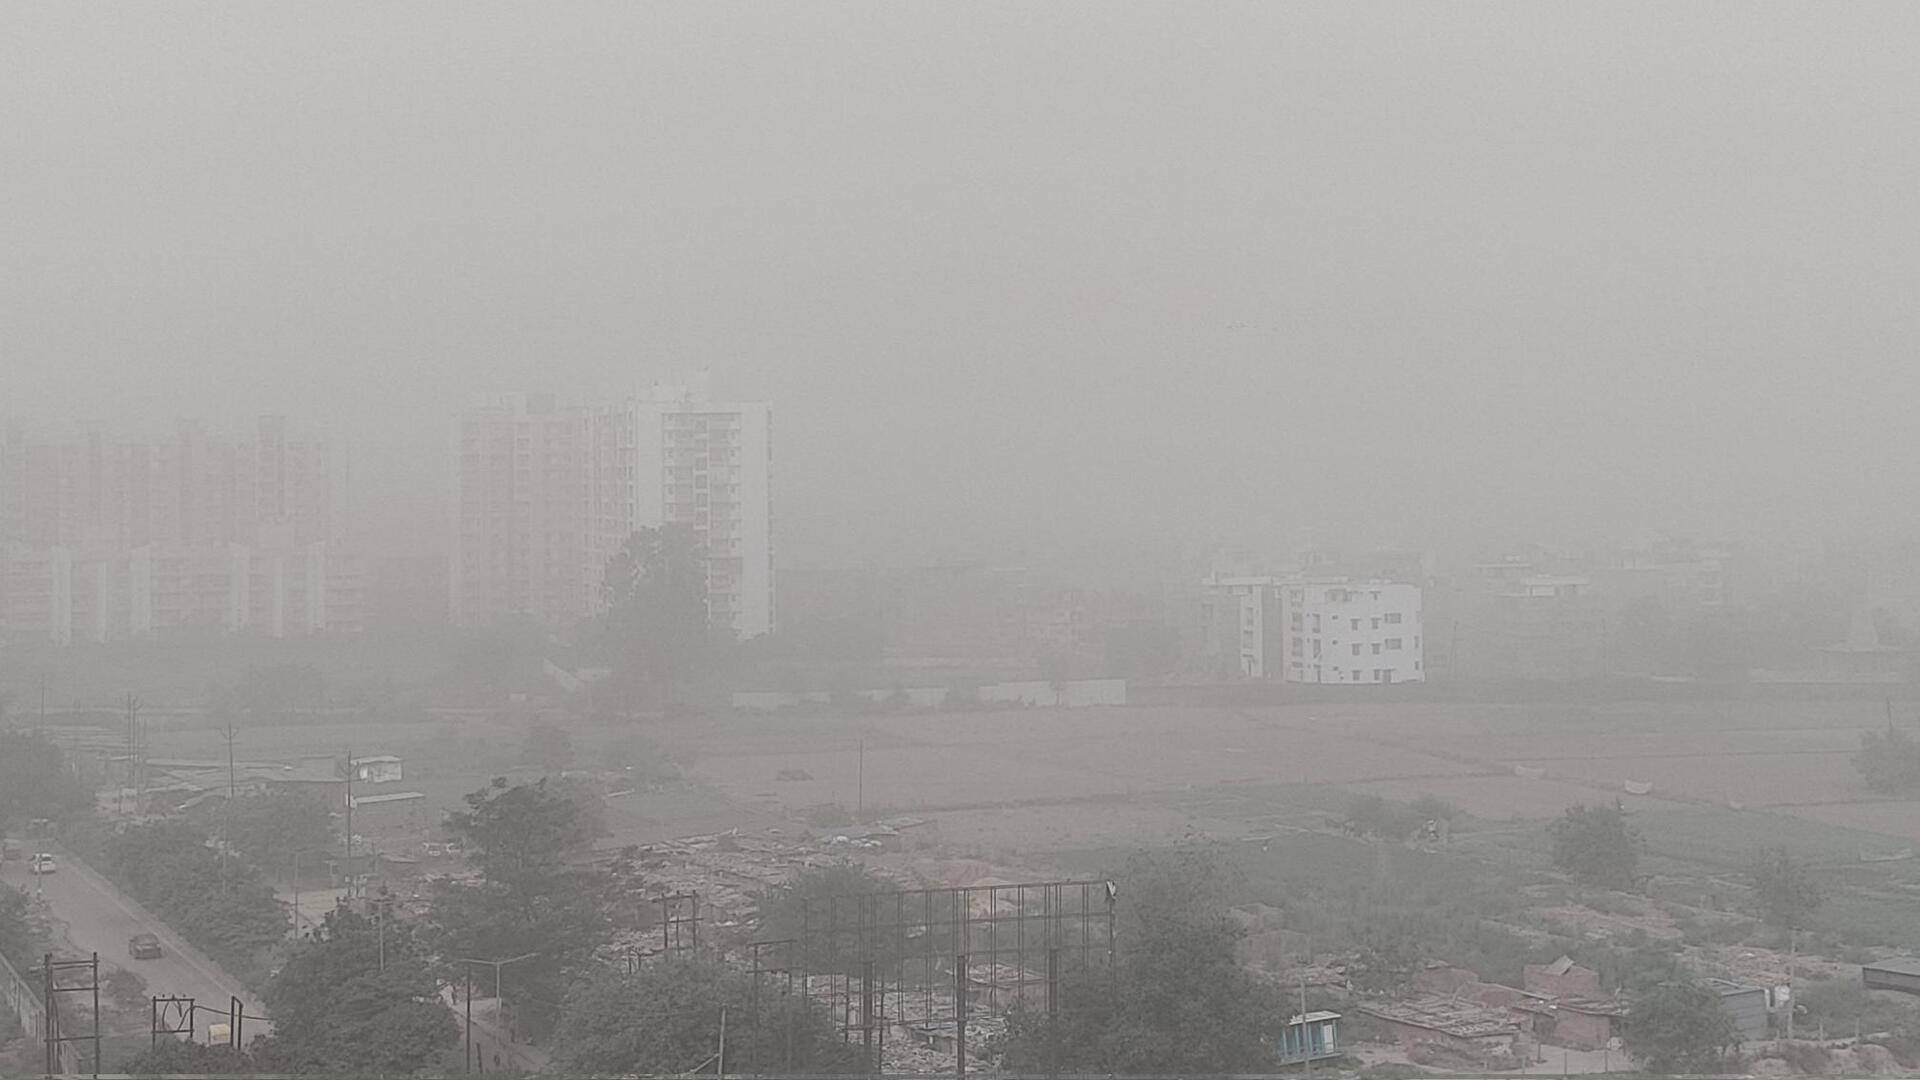 दिल्ली: अचानक धूल का स्तर बढ़ने से वायु गुणवत्ता हुई खराब, दृश्यता भी घटी